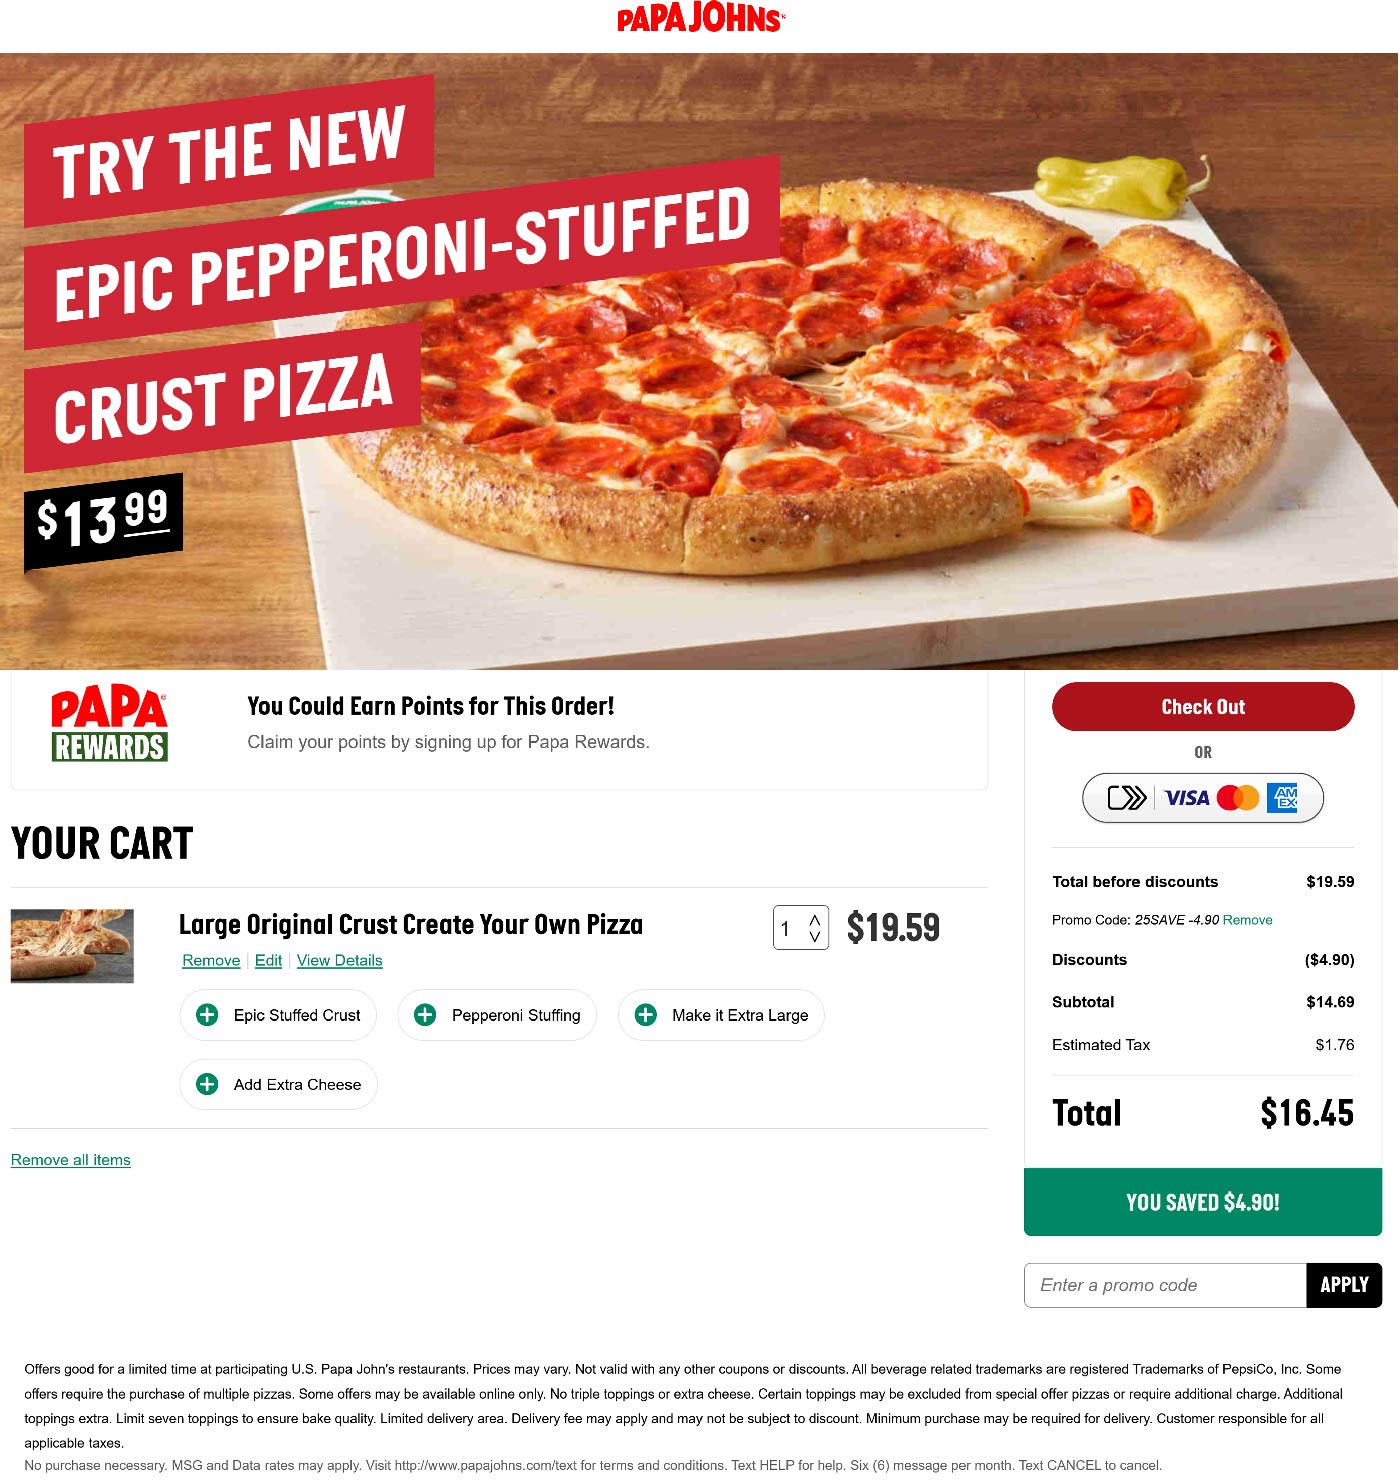 Papa Johns restaurants Coupon  25% off at Papa Johns pizza via promo code 25SAVE #papajohns 